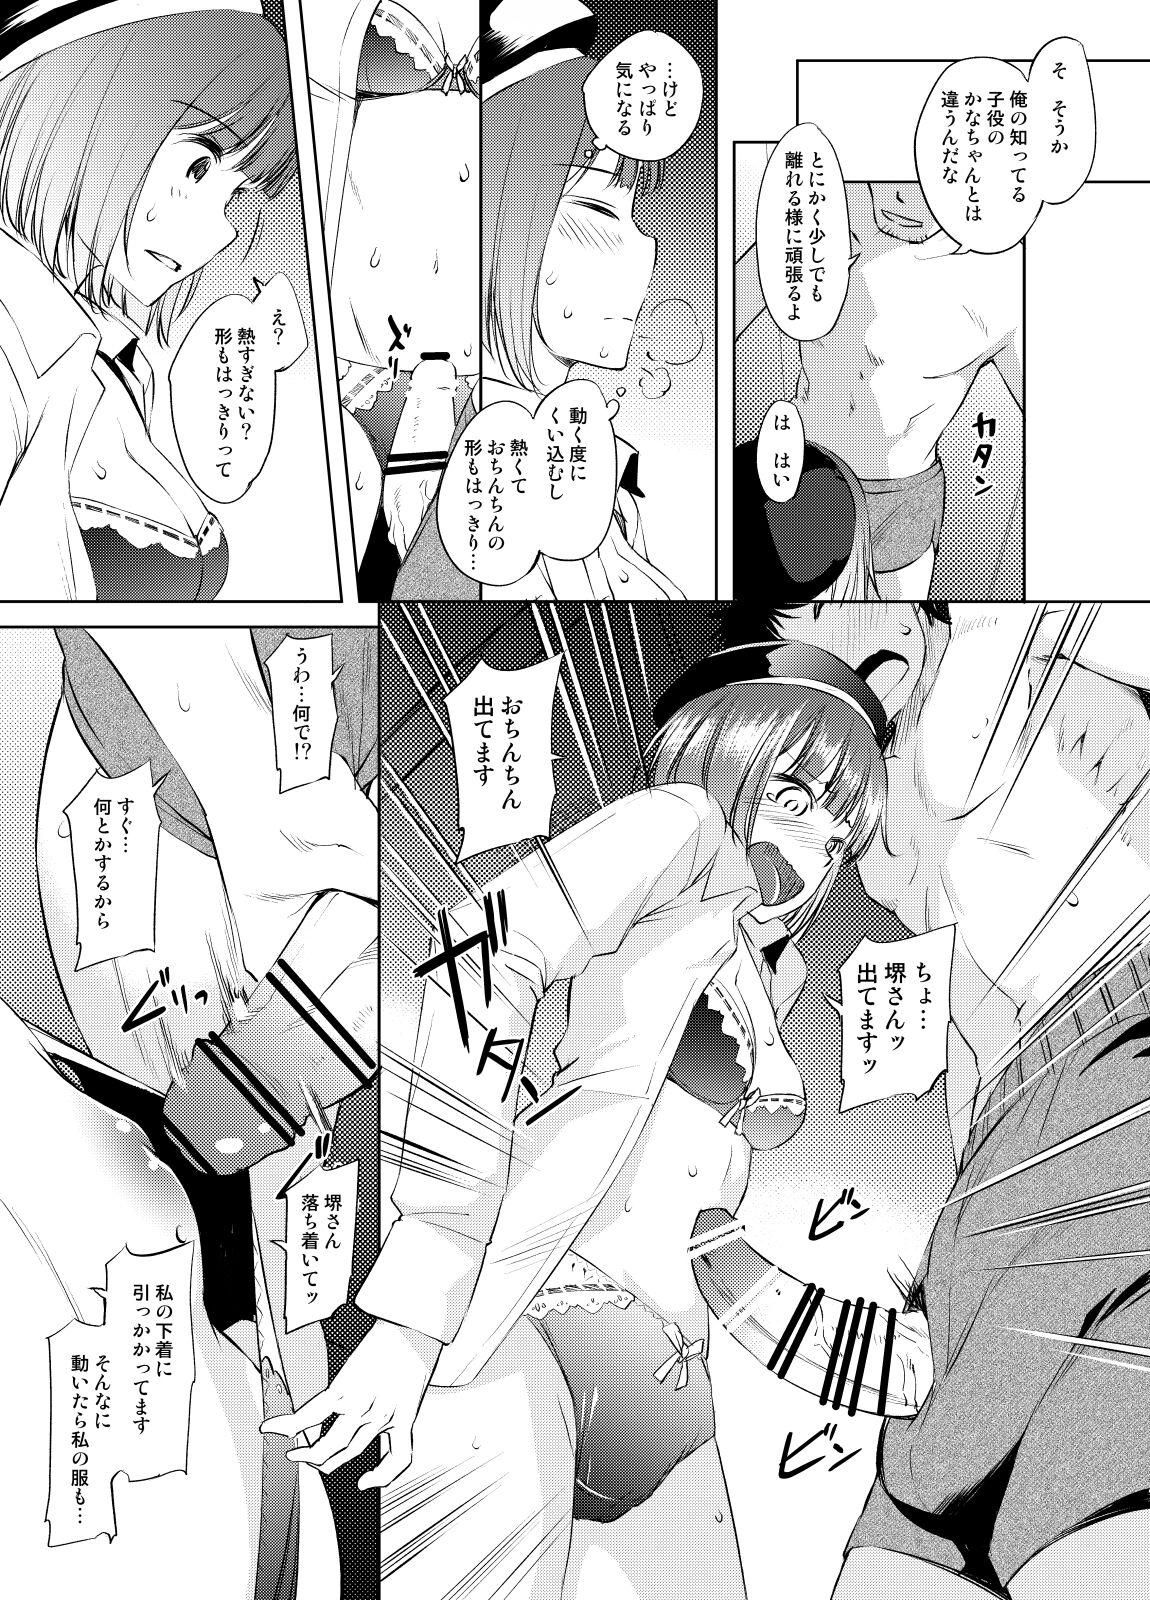 Amigos Arima Kana-san Manga - Oshi no ko Strange - Page 2